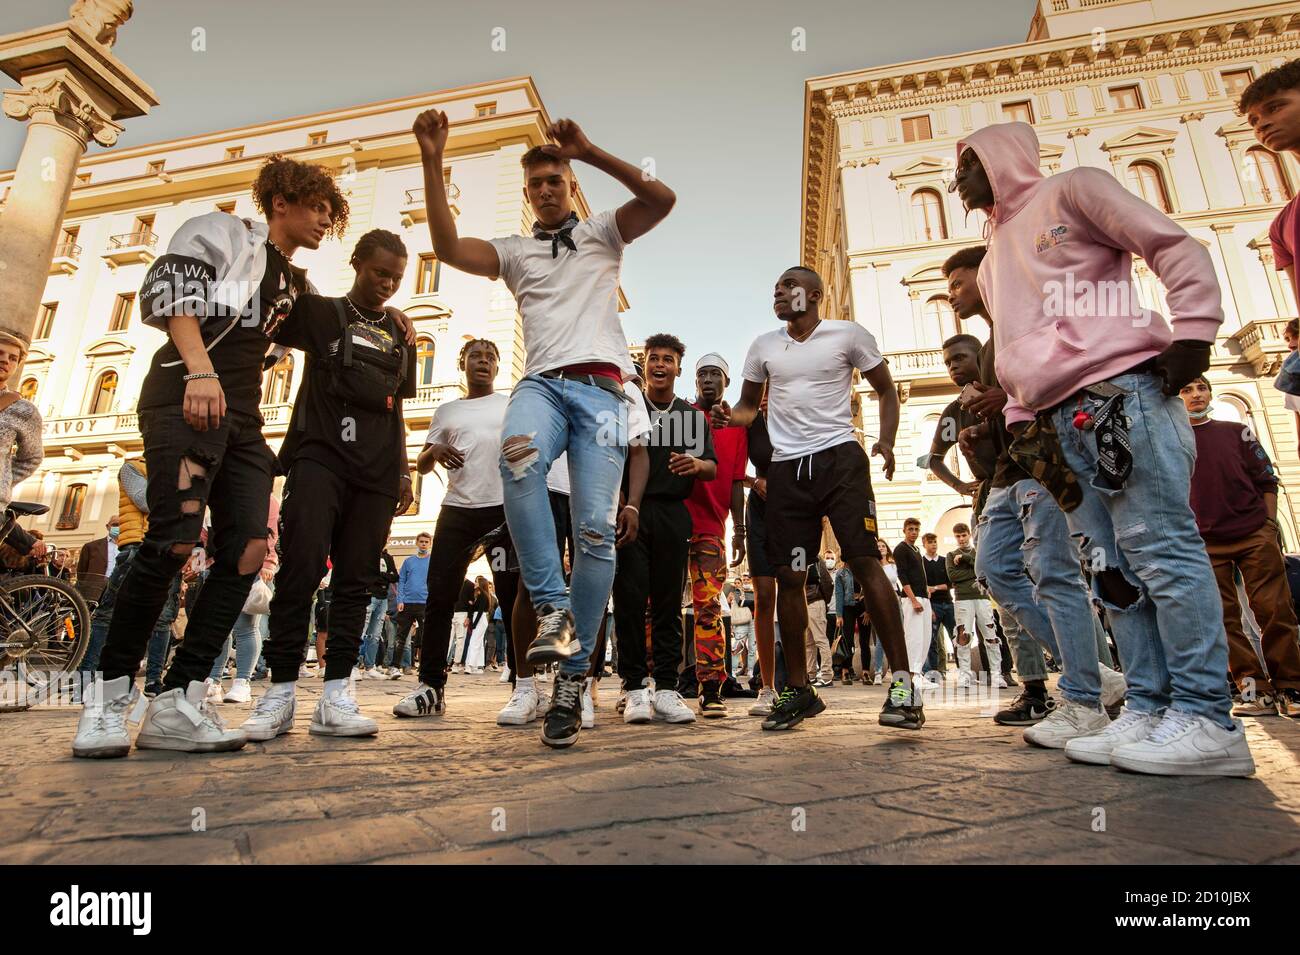 Florenz, Italien - 2020. September 26: Unbekannte B-Boy Break Tänzer treten auf der Straße auf. Hip-Hop-Schlacht bei einem zwanglosen Street-Dance-Treffen. Stockfoto